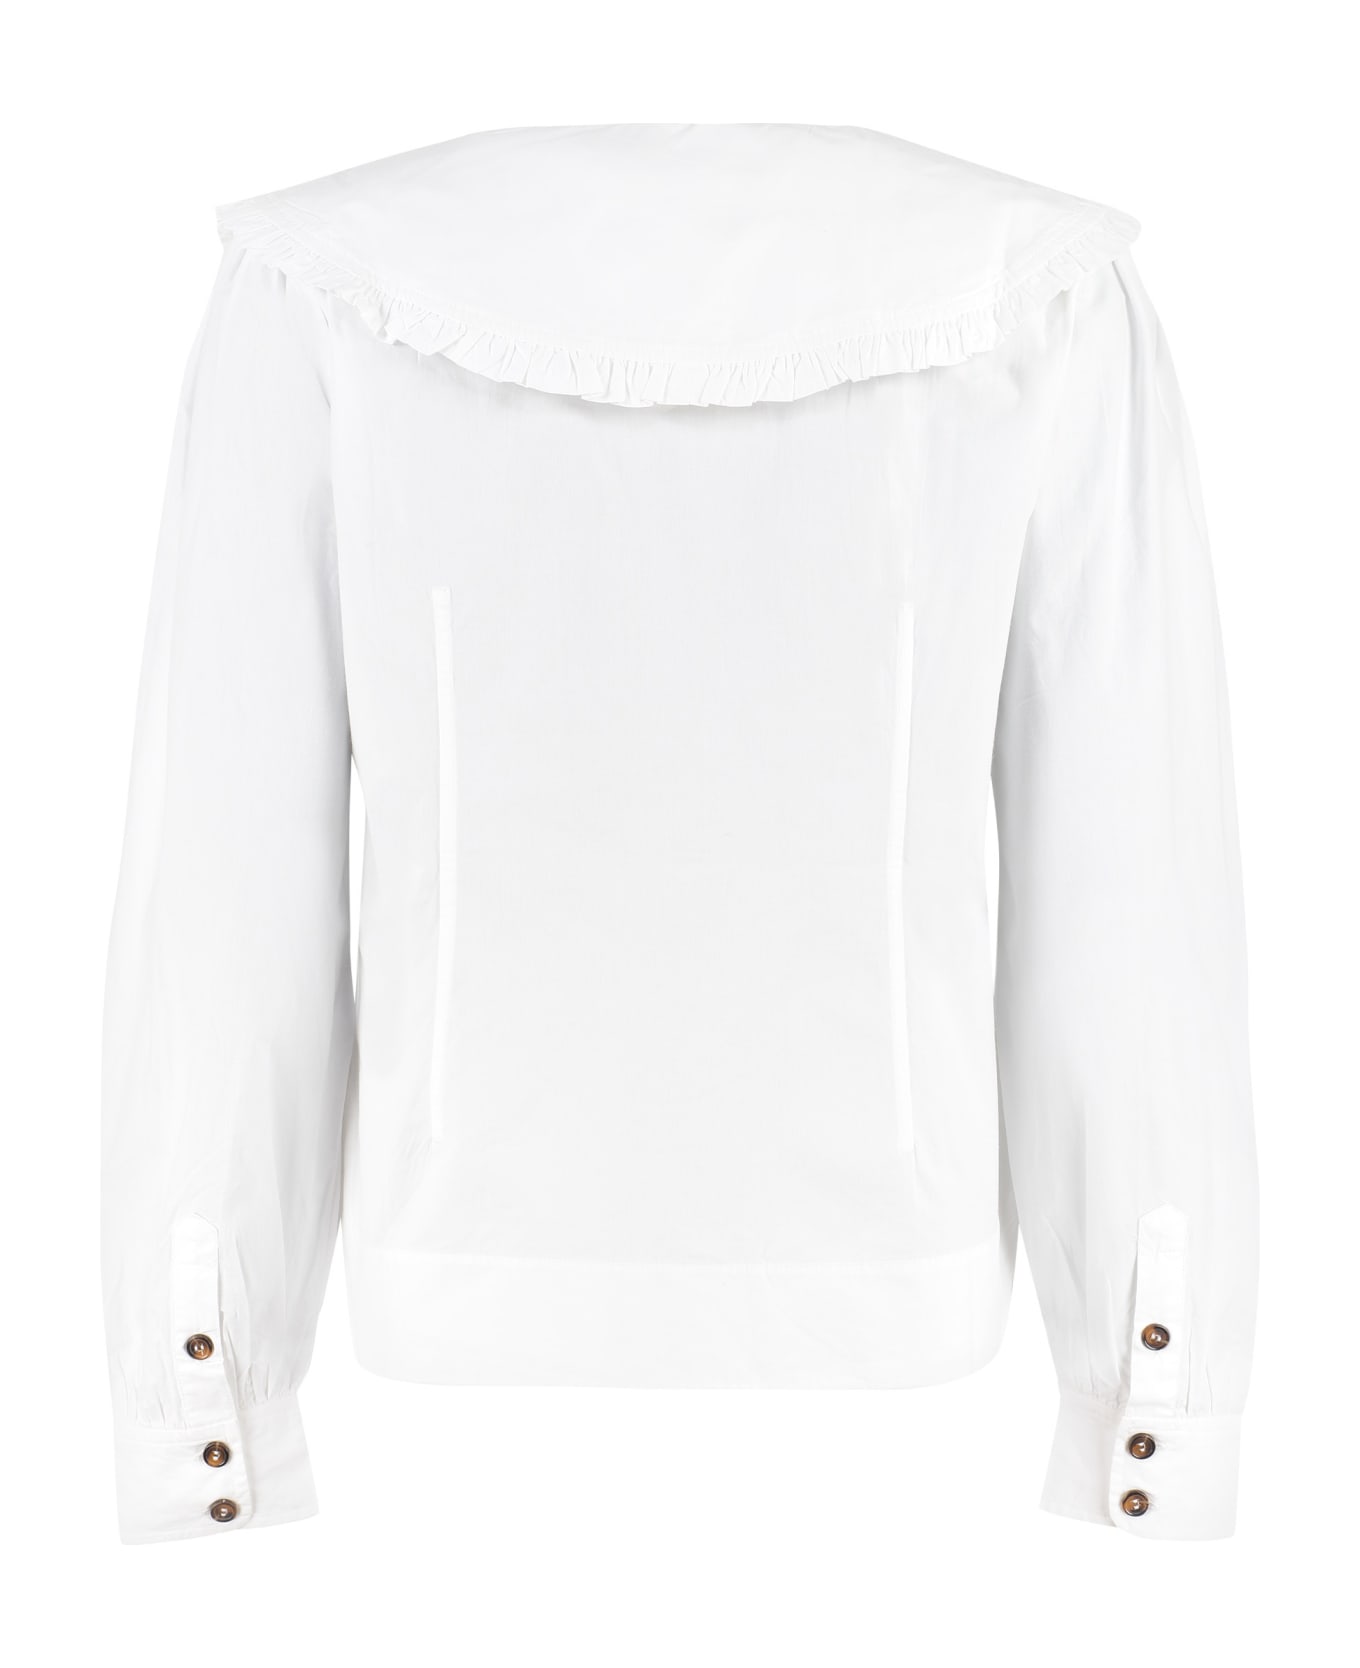 Ganni Cotton Shirt - White